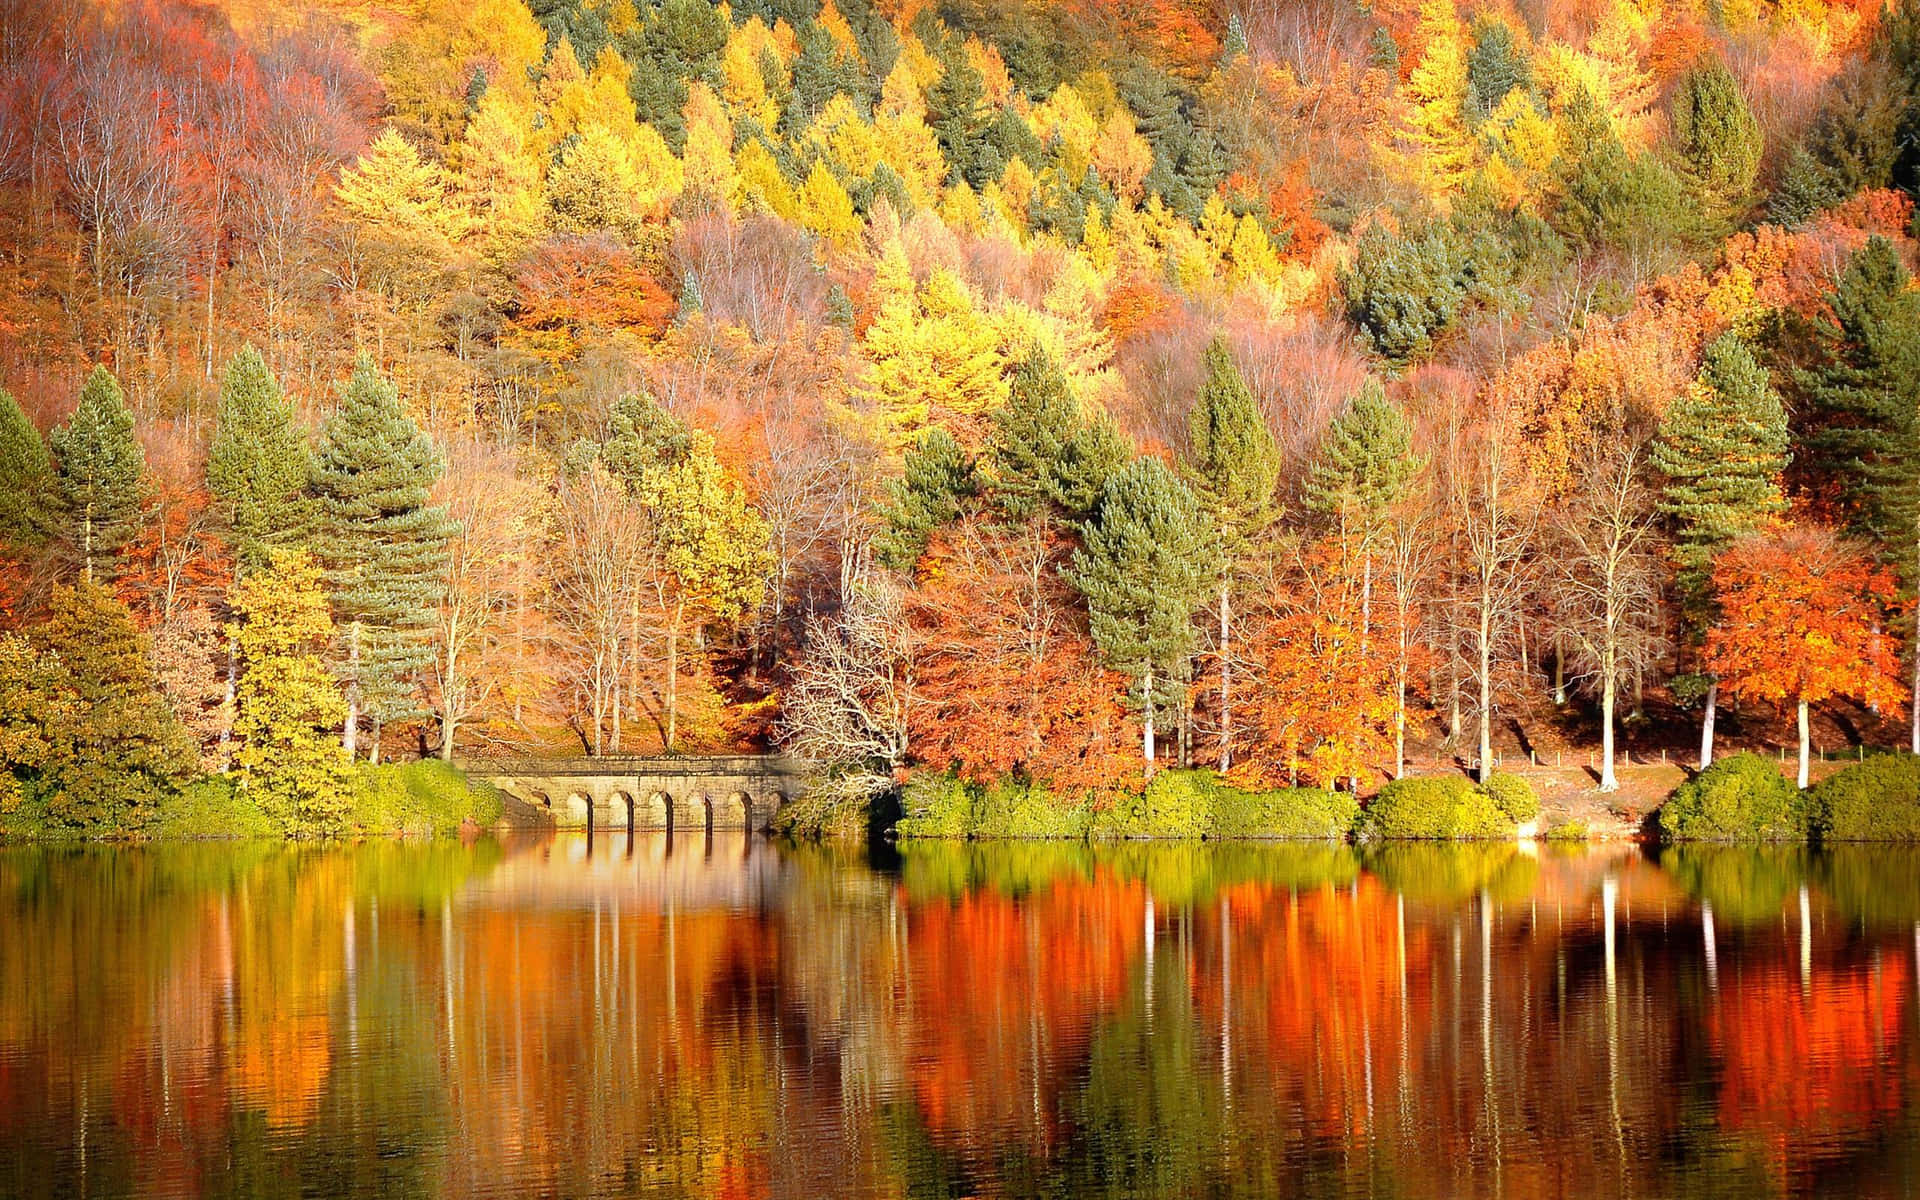 Naturen i sin smukkeste form - et efterårss landskab fyldt med smukke efterårsfarver. Wallpaper